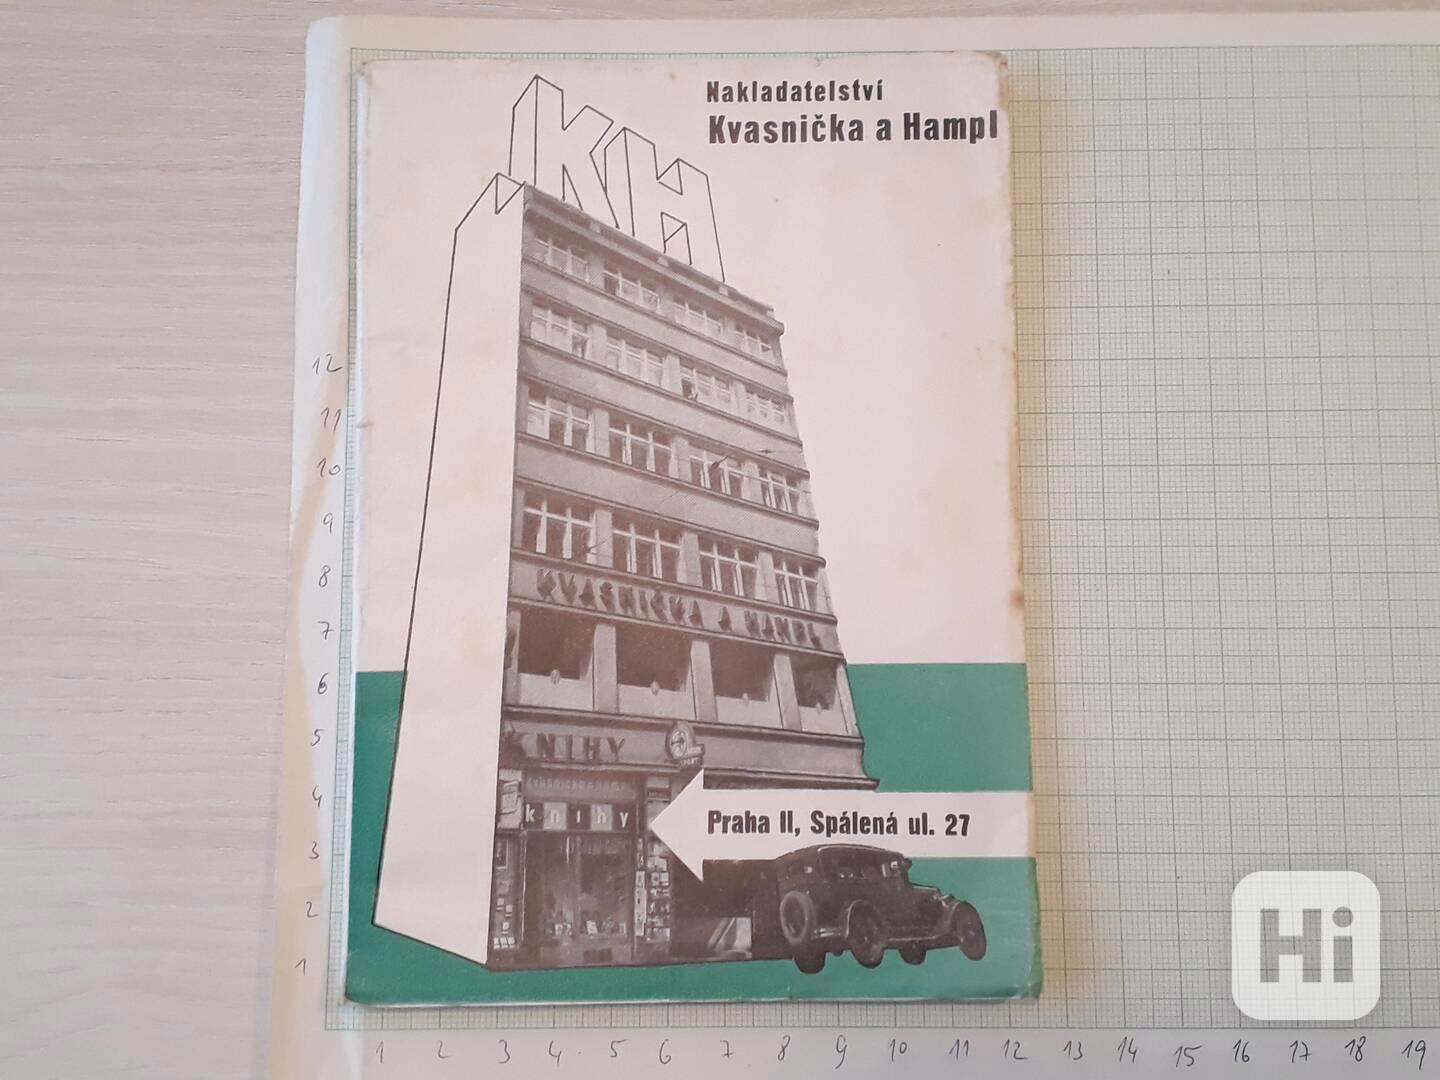  Kvasnička a Hampl - katalog nakladatelství 1931 - foto 1